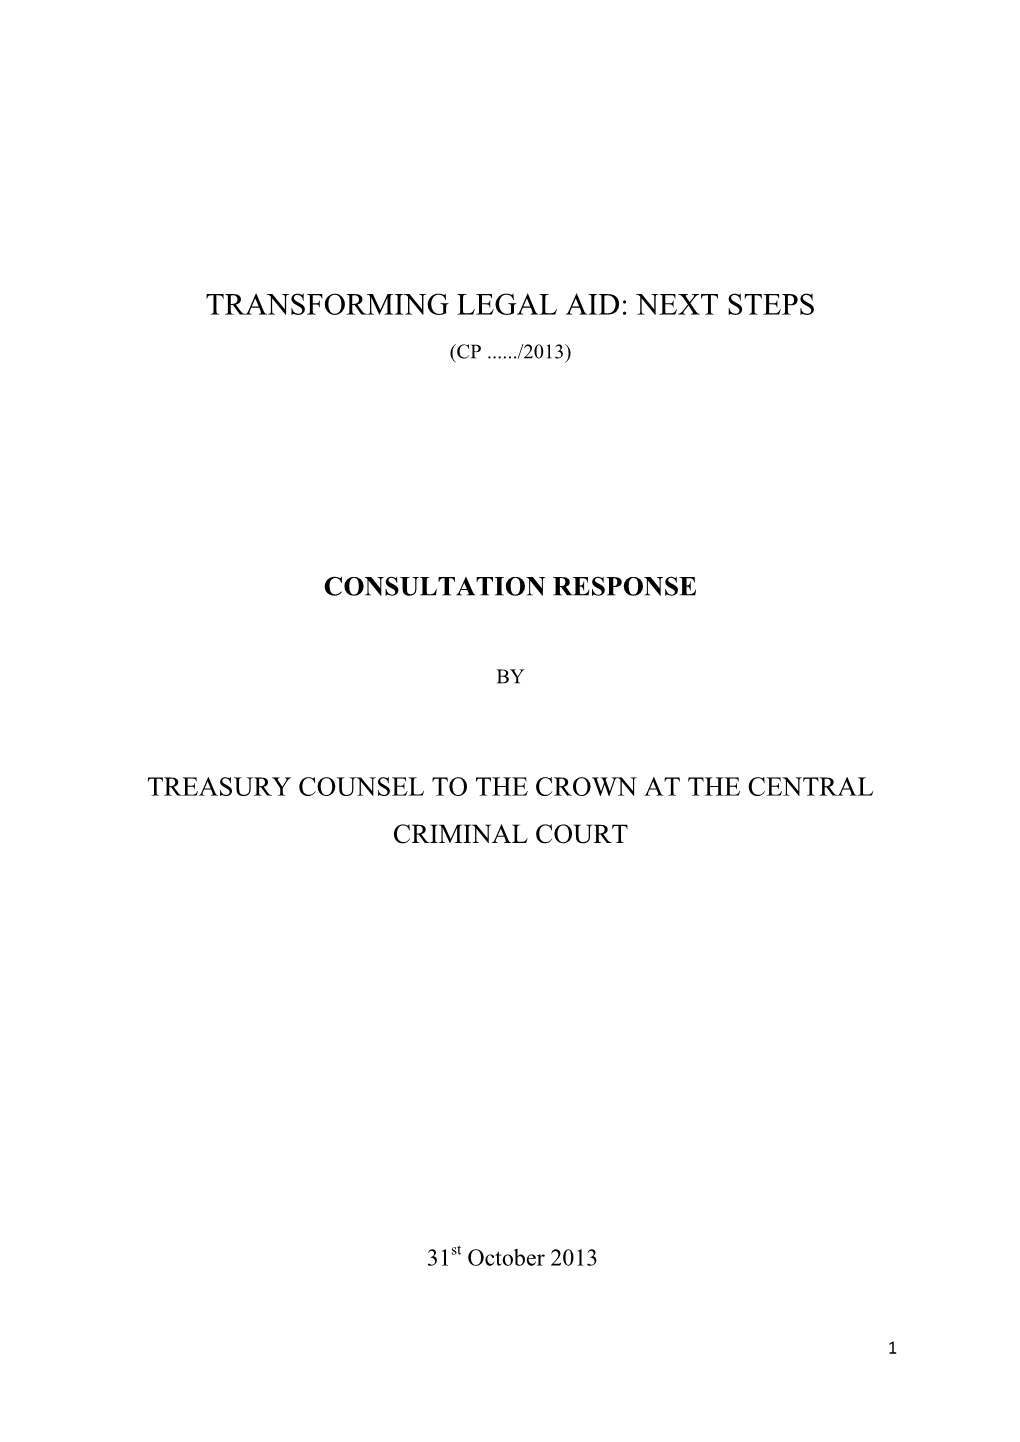 Transforming Legal Aid: Next Steps